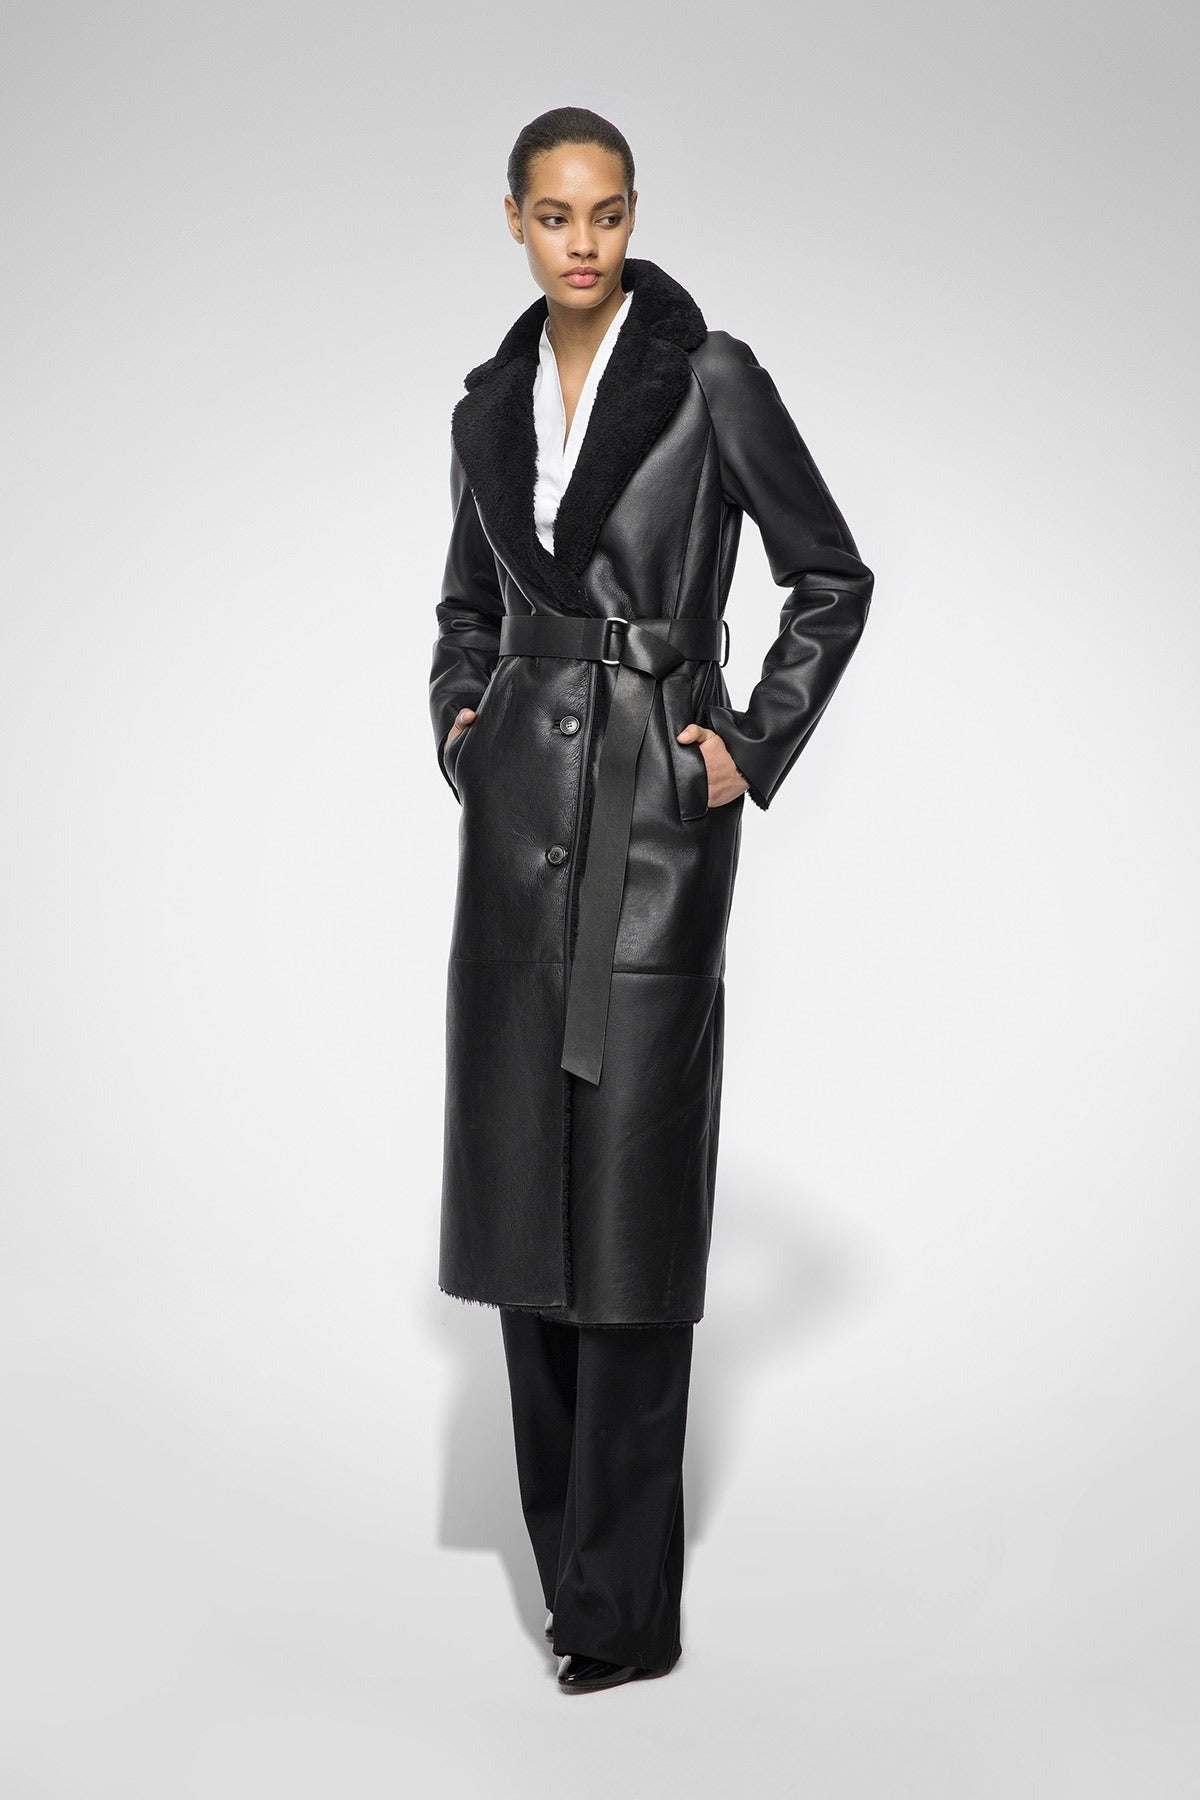 Women's Fur Shearling Leather Coat In Black